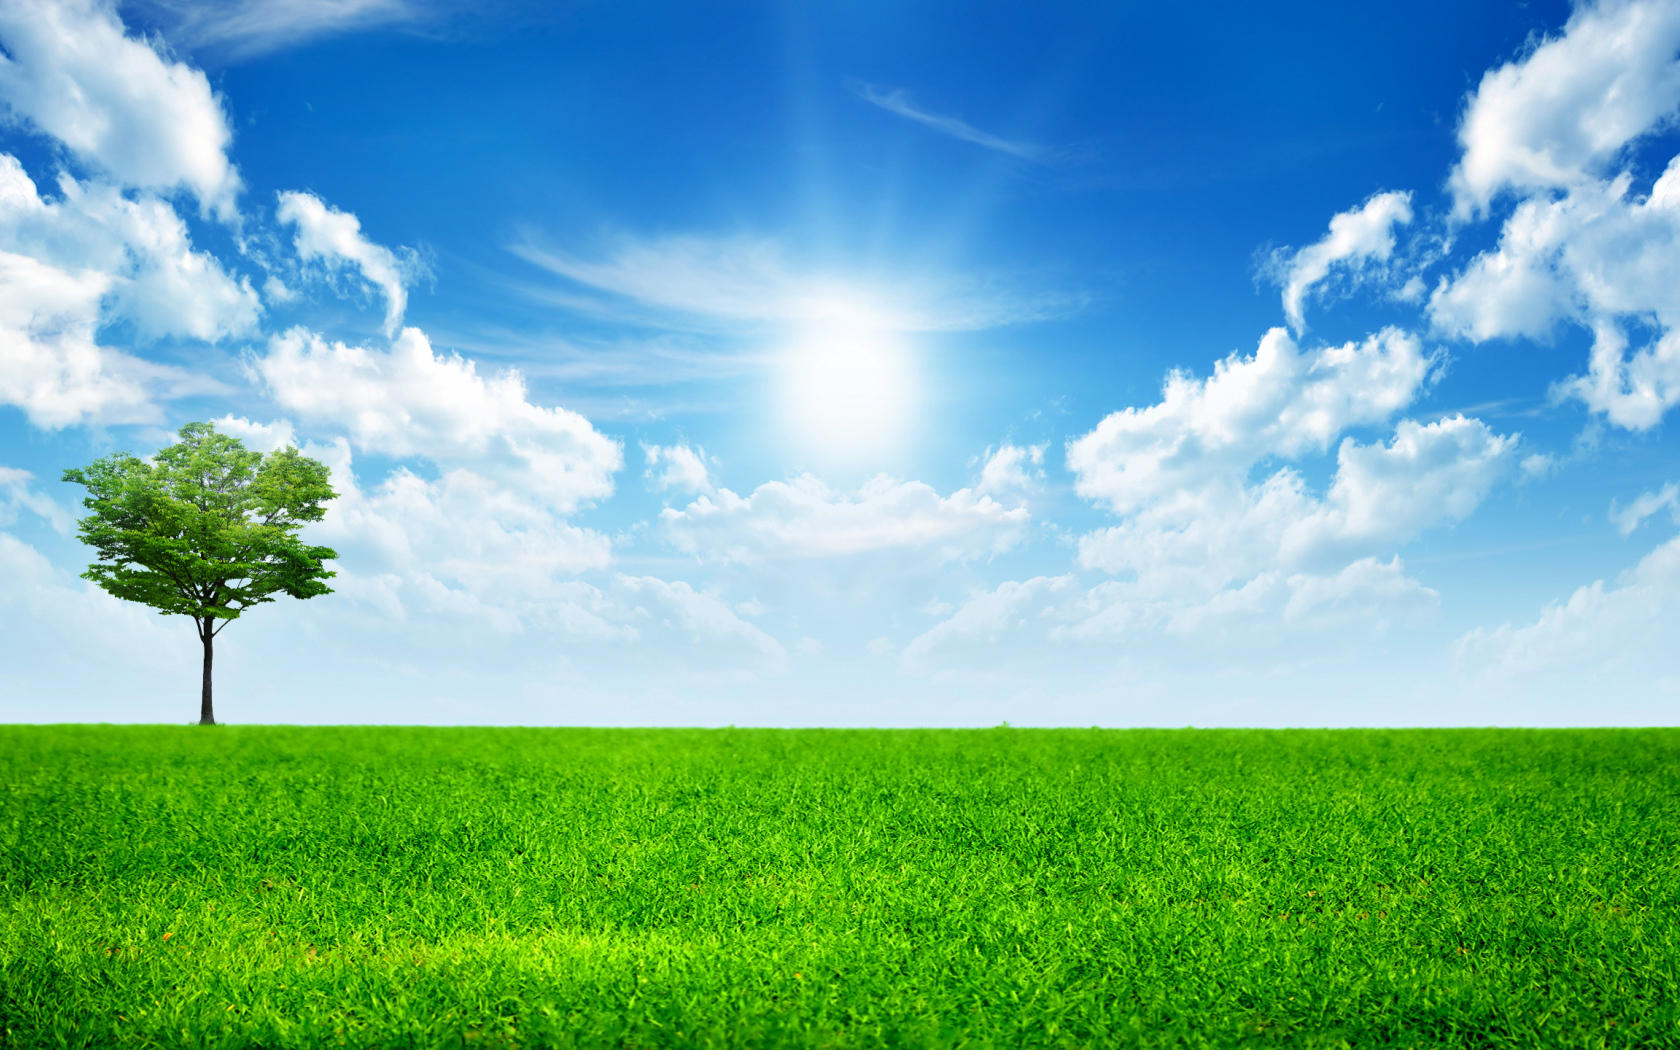 Зеленая трава под ярким солнцем в голубом небе с белыми облаками